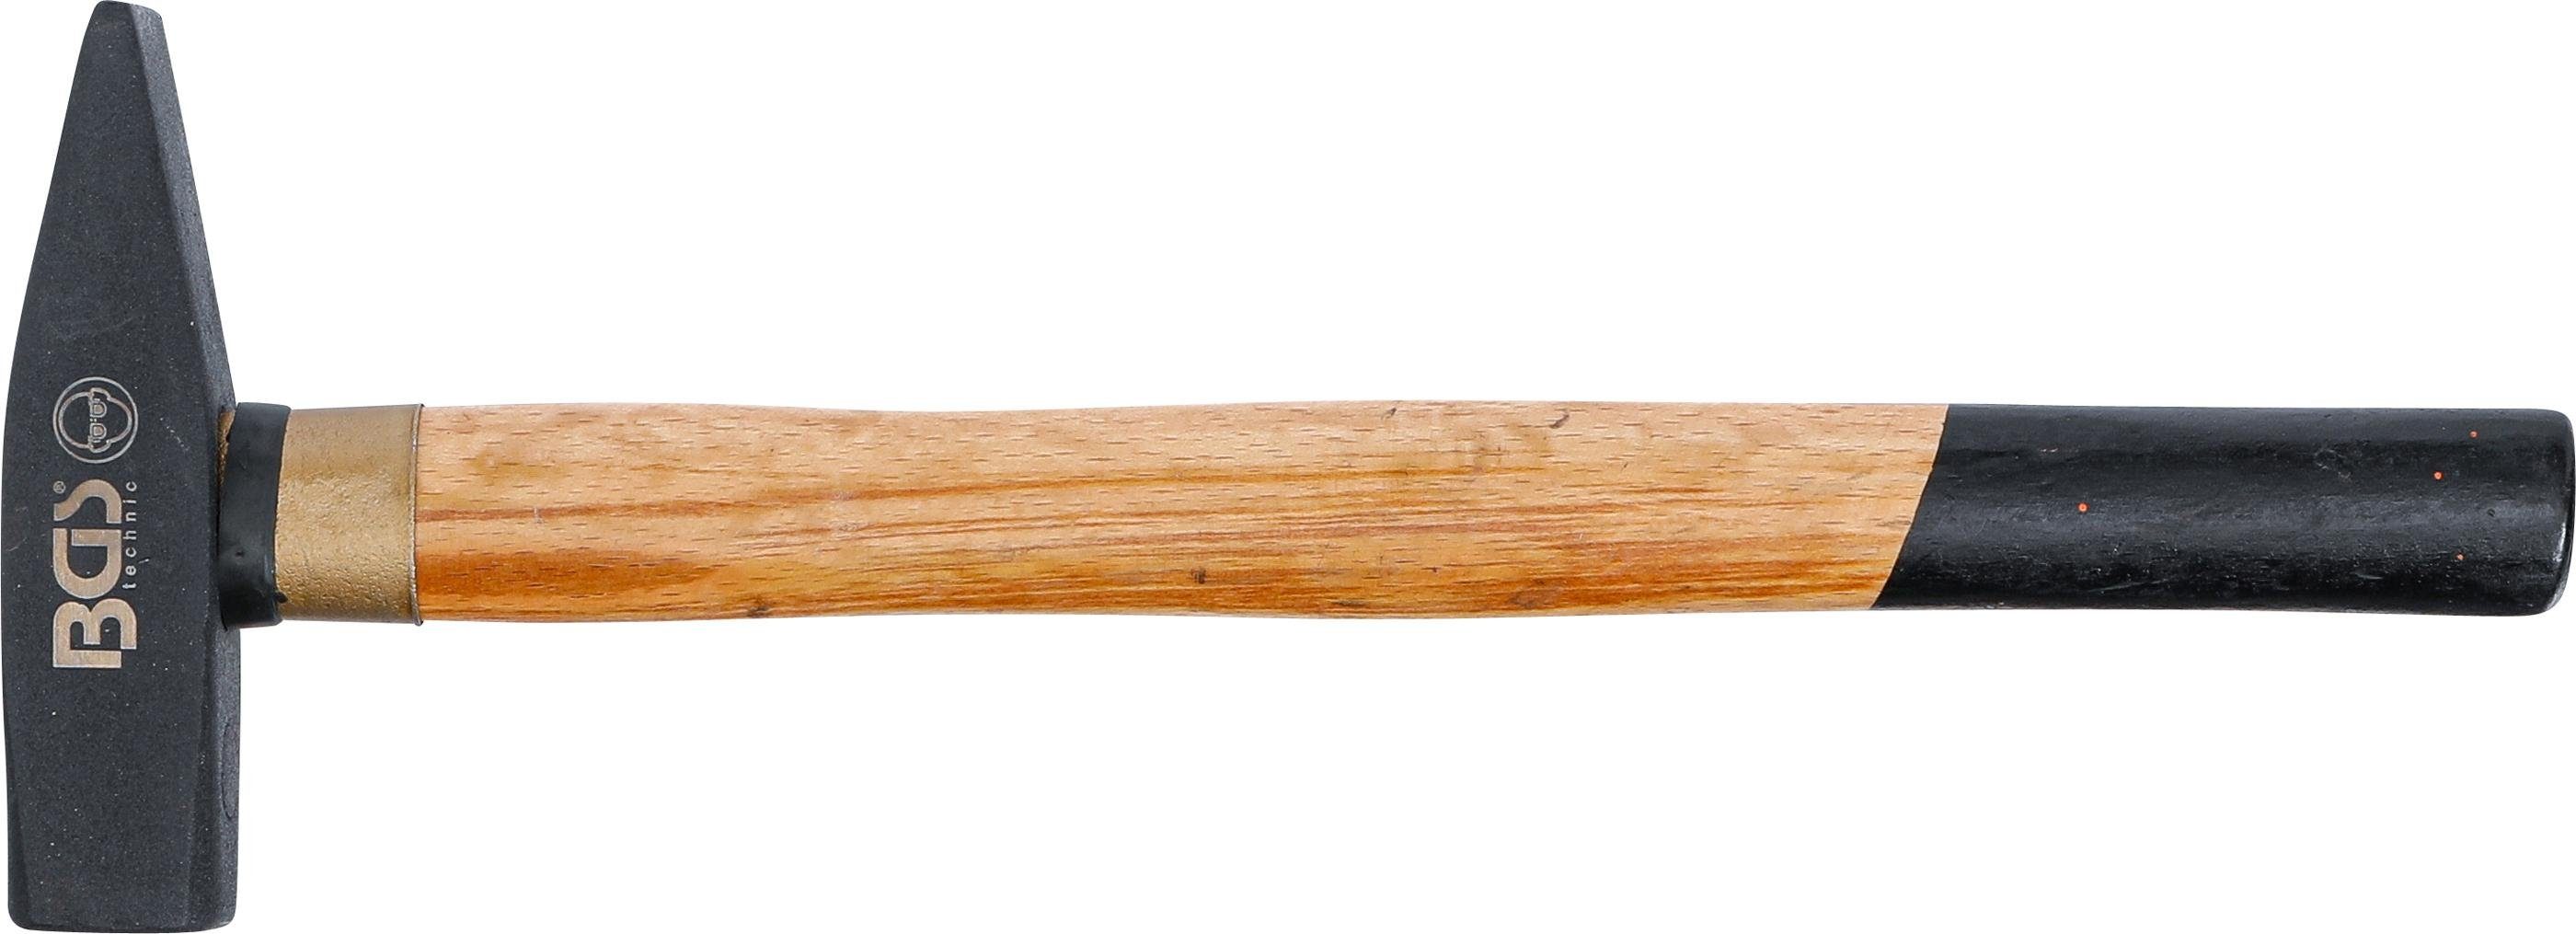 BGS technic Hammer Schlosserhammer, Holz-Stiel, 1041, g DIN 400